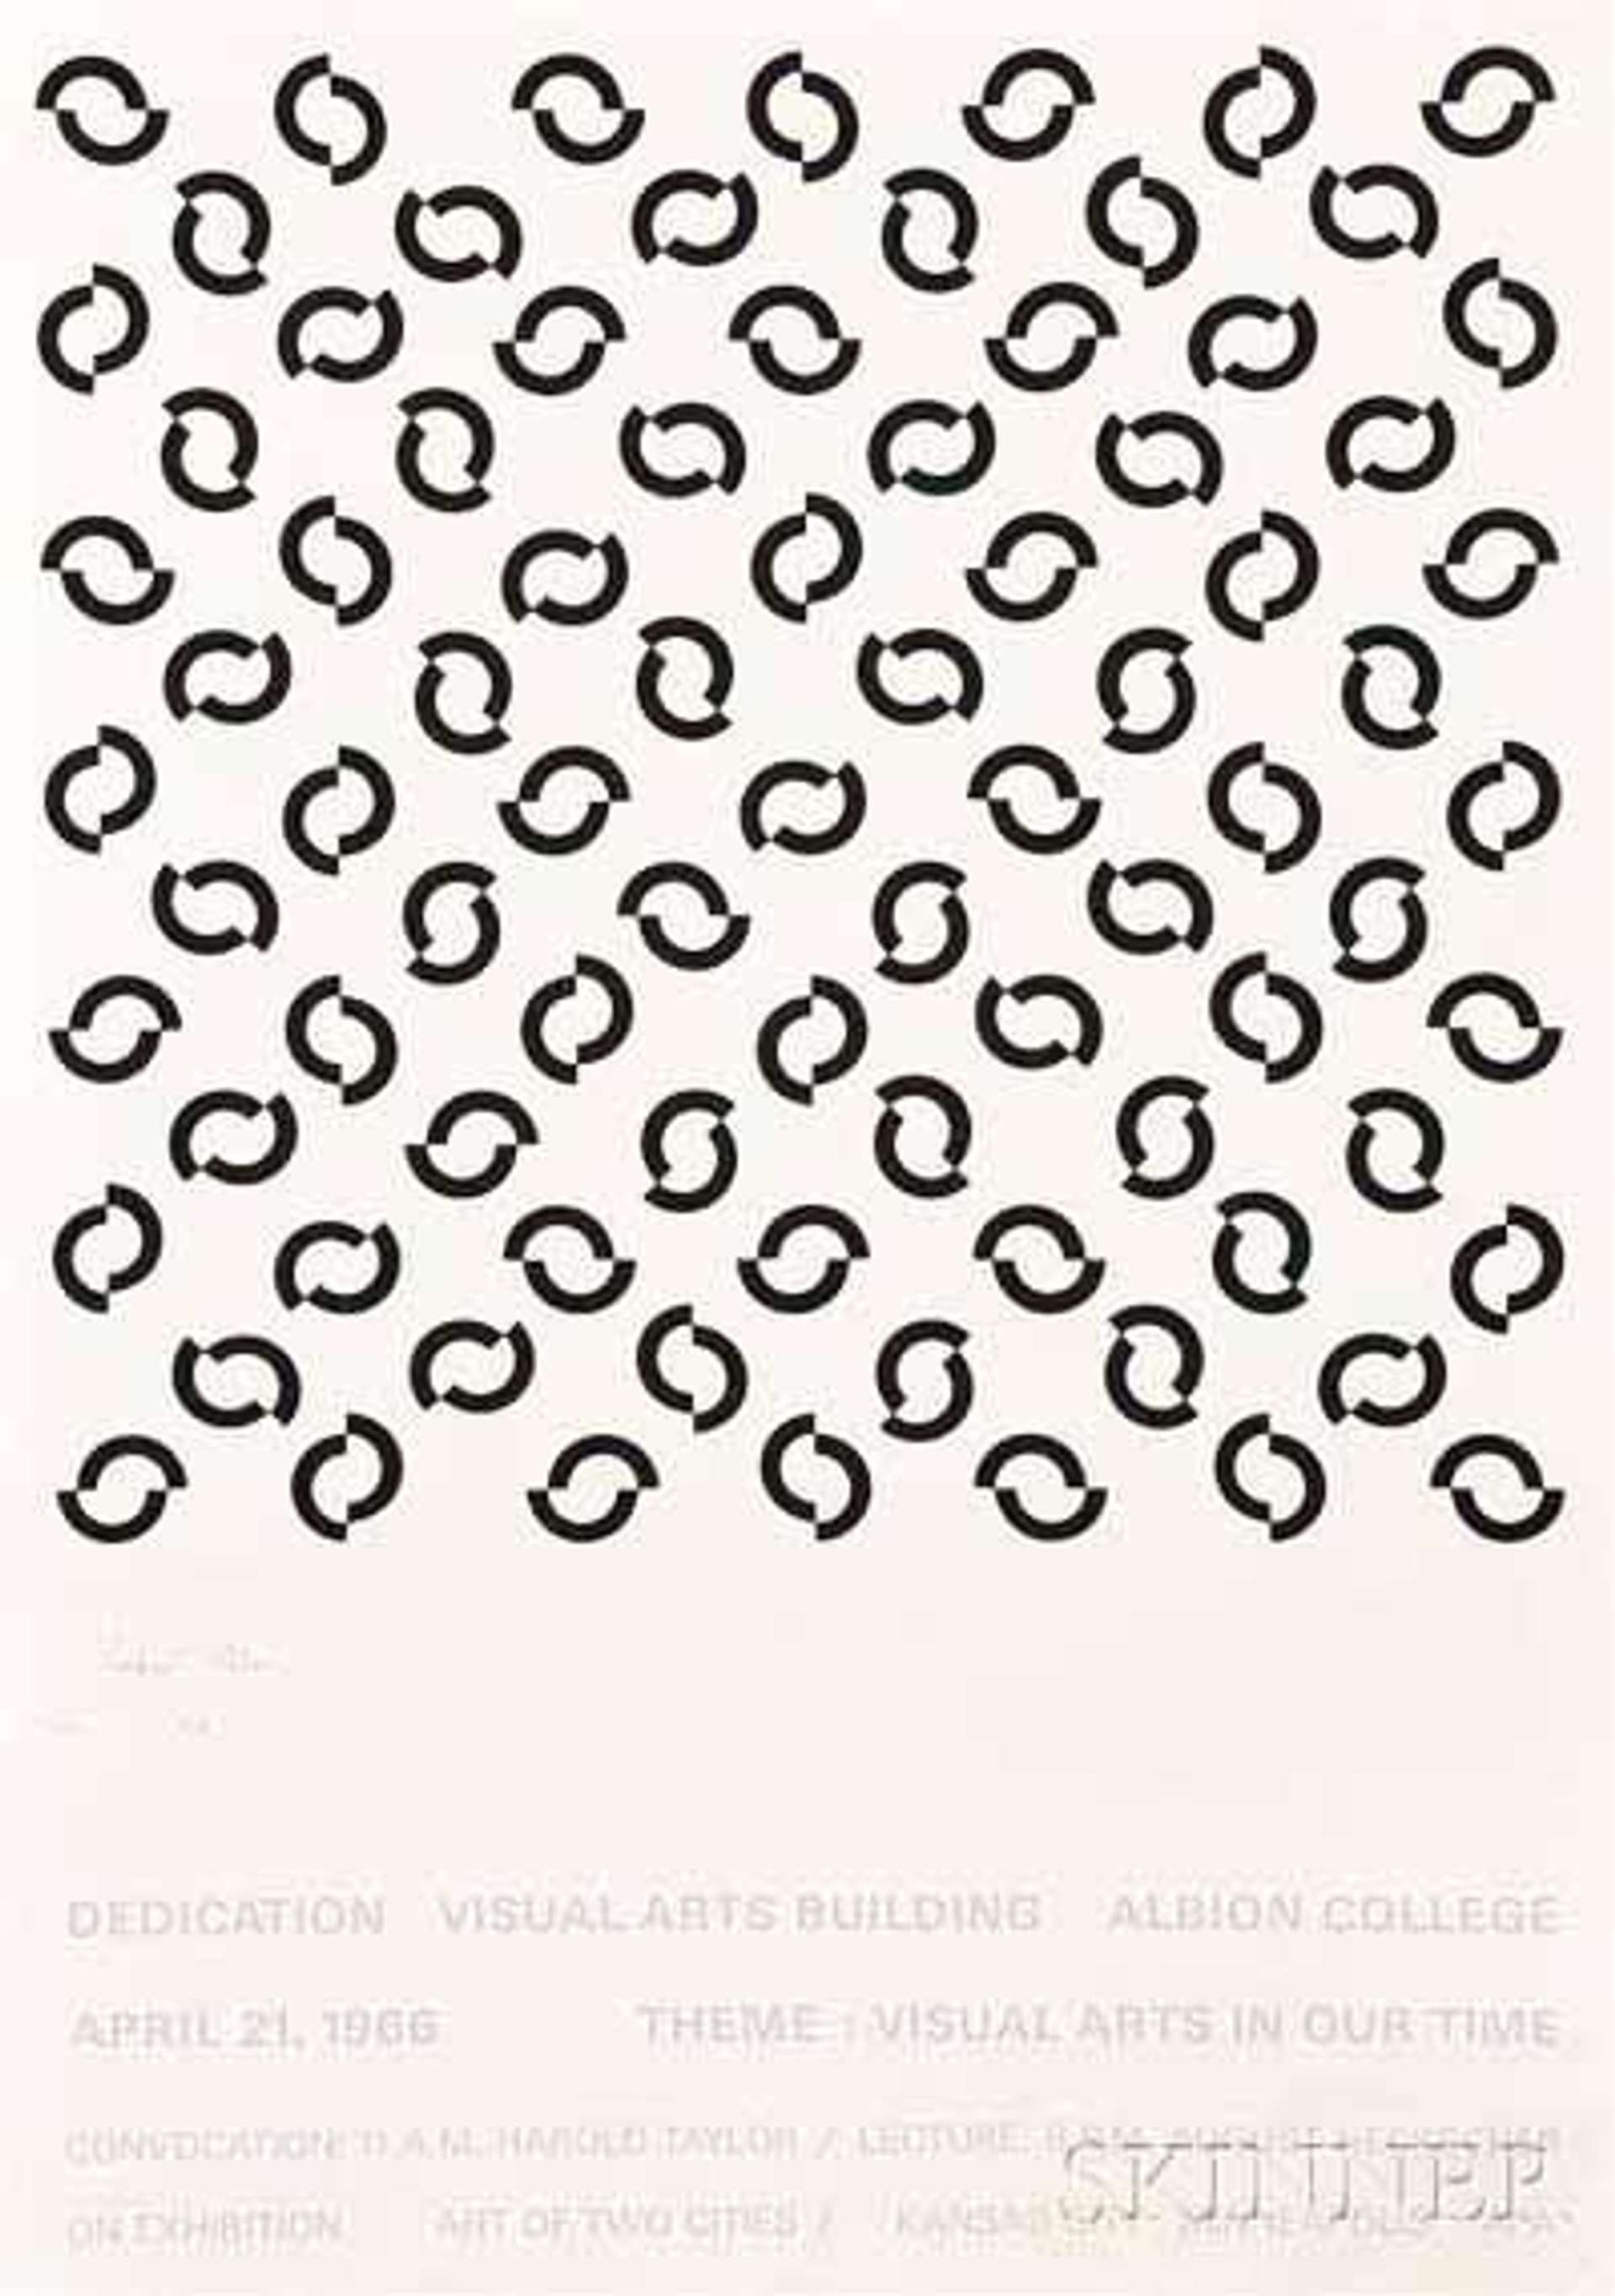 Dedication Visual Arts Building Albion College - Signed Print by Bridget Riley 1966 - MyArtBroker